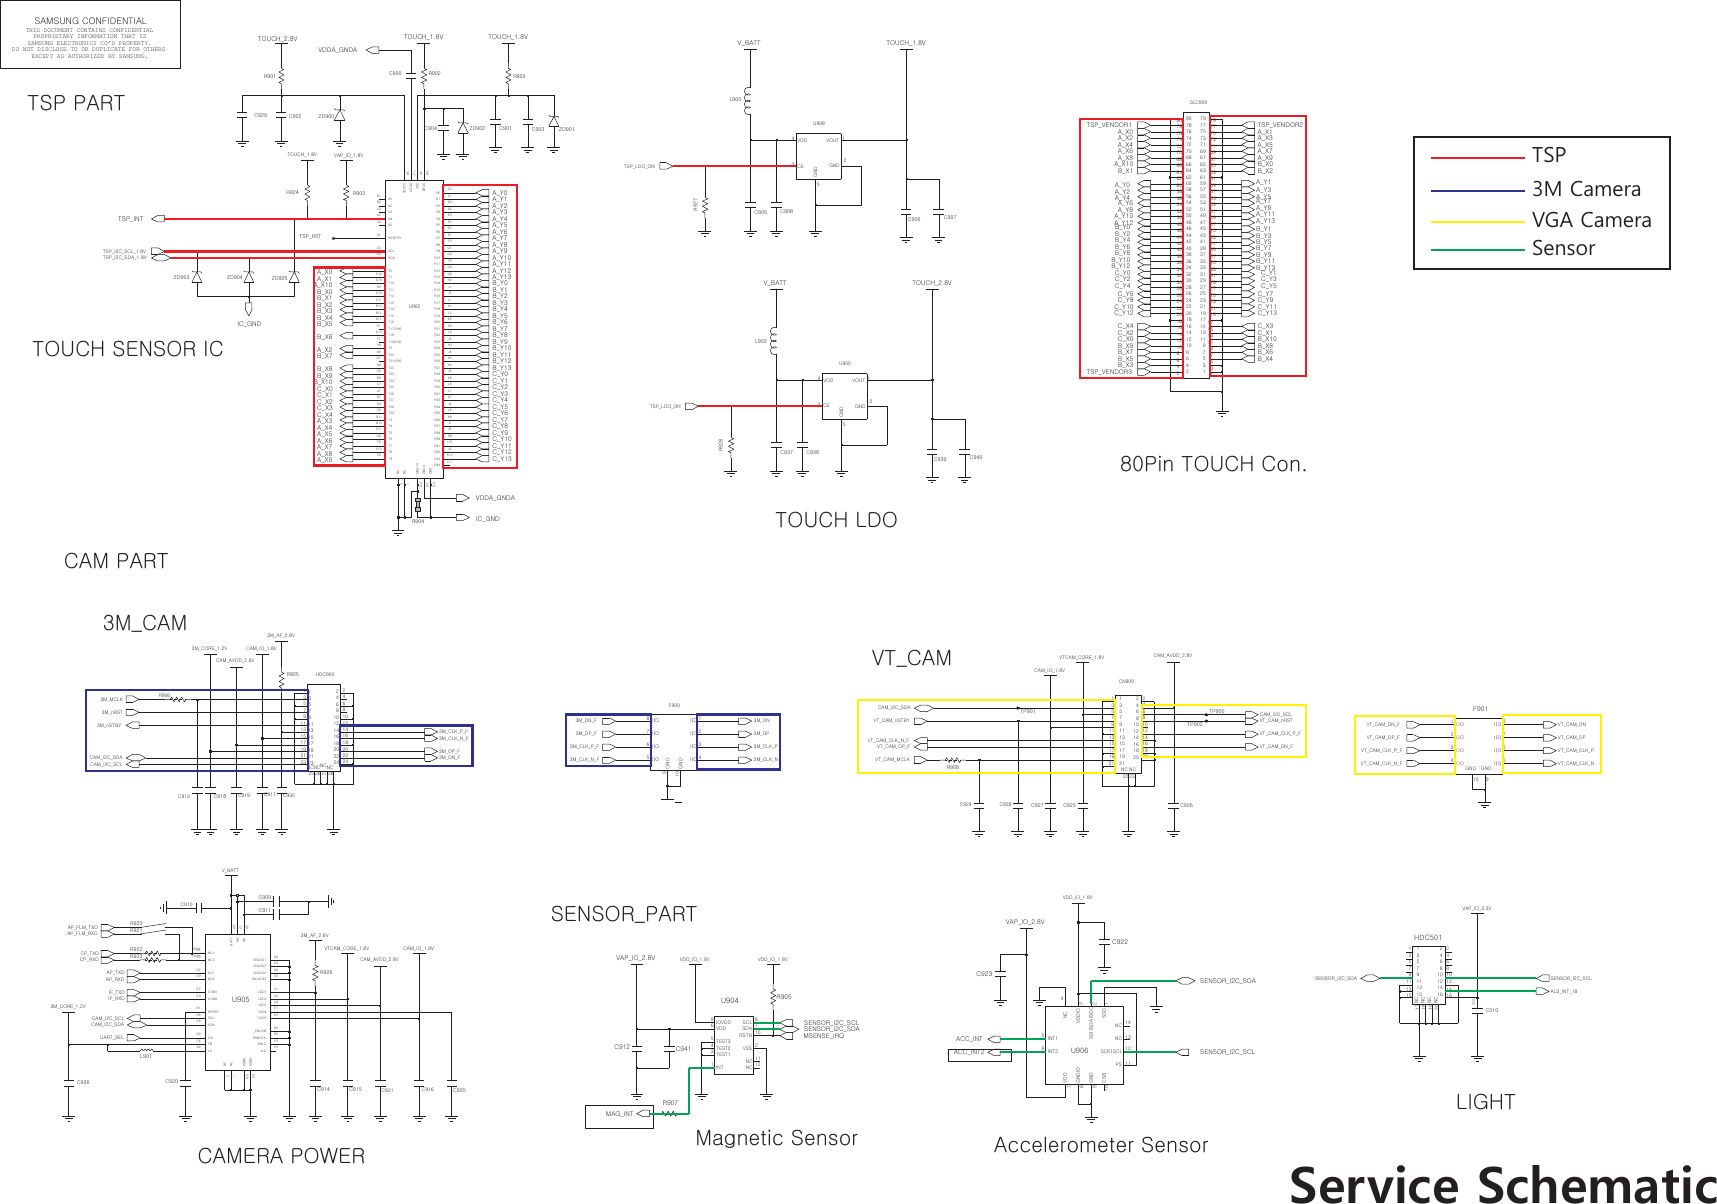 Page 9 of 10 - Samsung GT-P5100 - Schematics. Www.s-manuals.com. Service Schematics